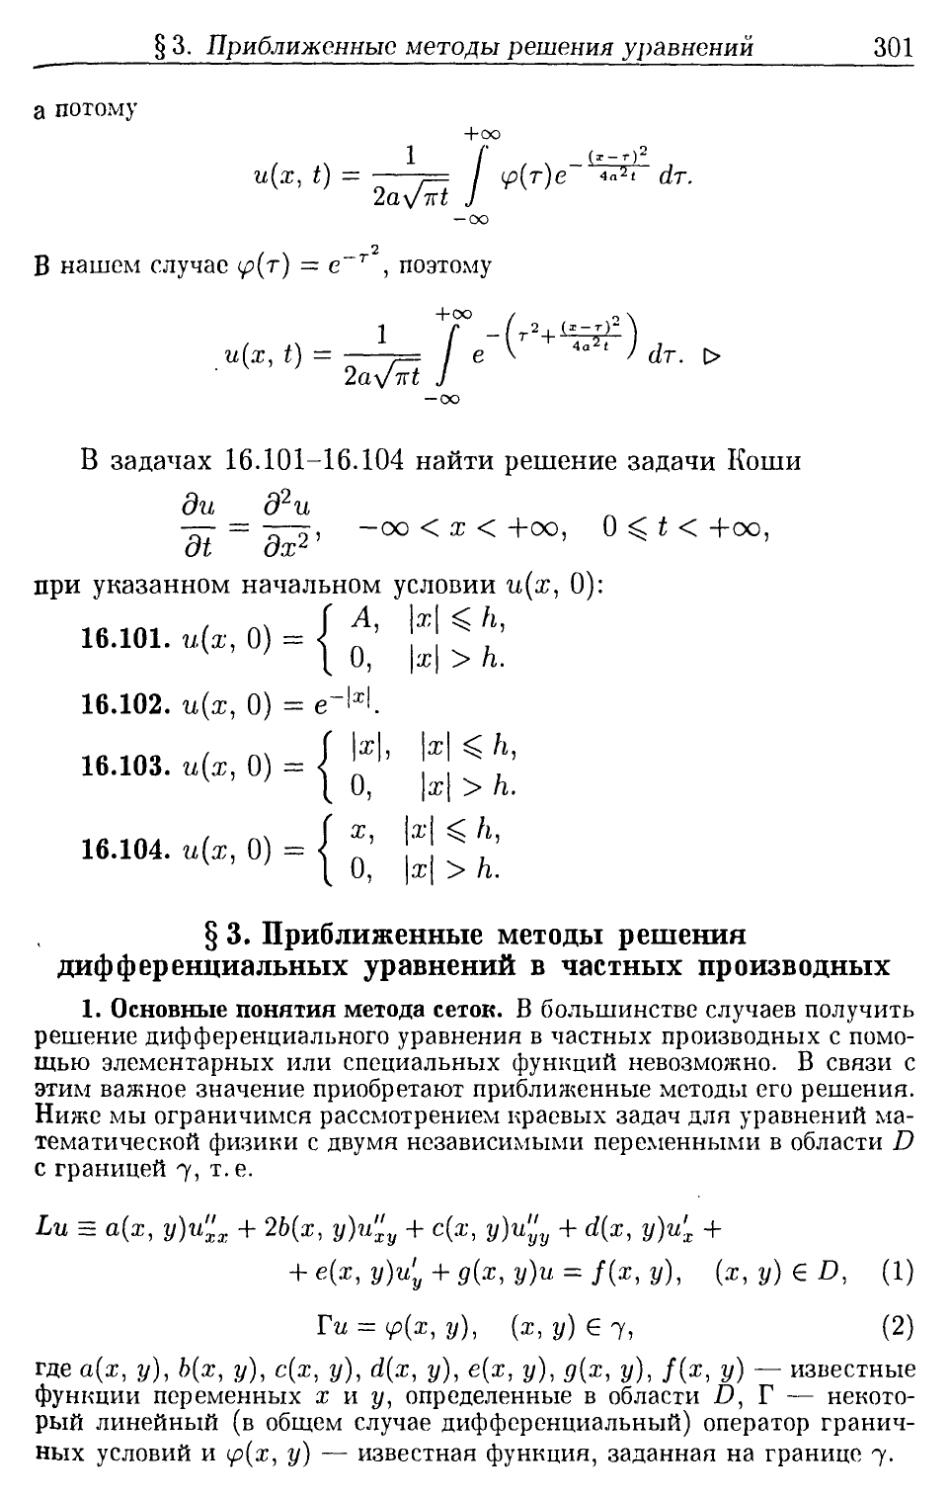 §3. Приближенные методы решения дифференциальных уравнений в частных производных